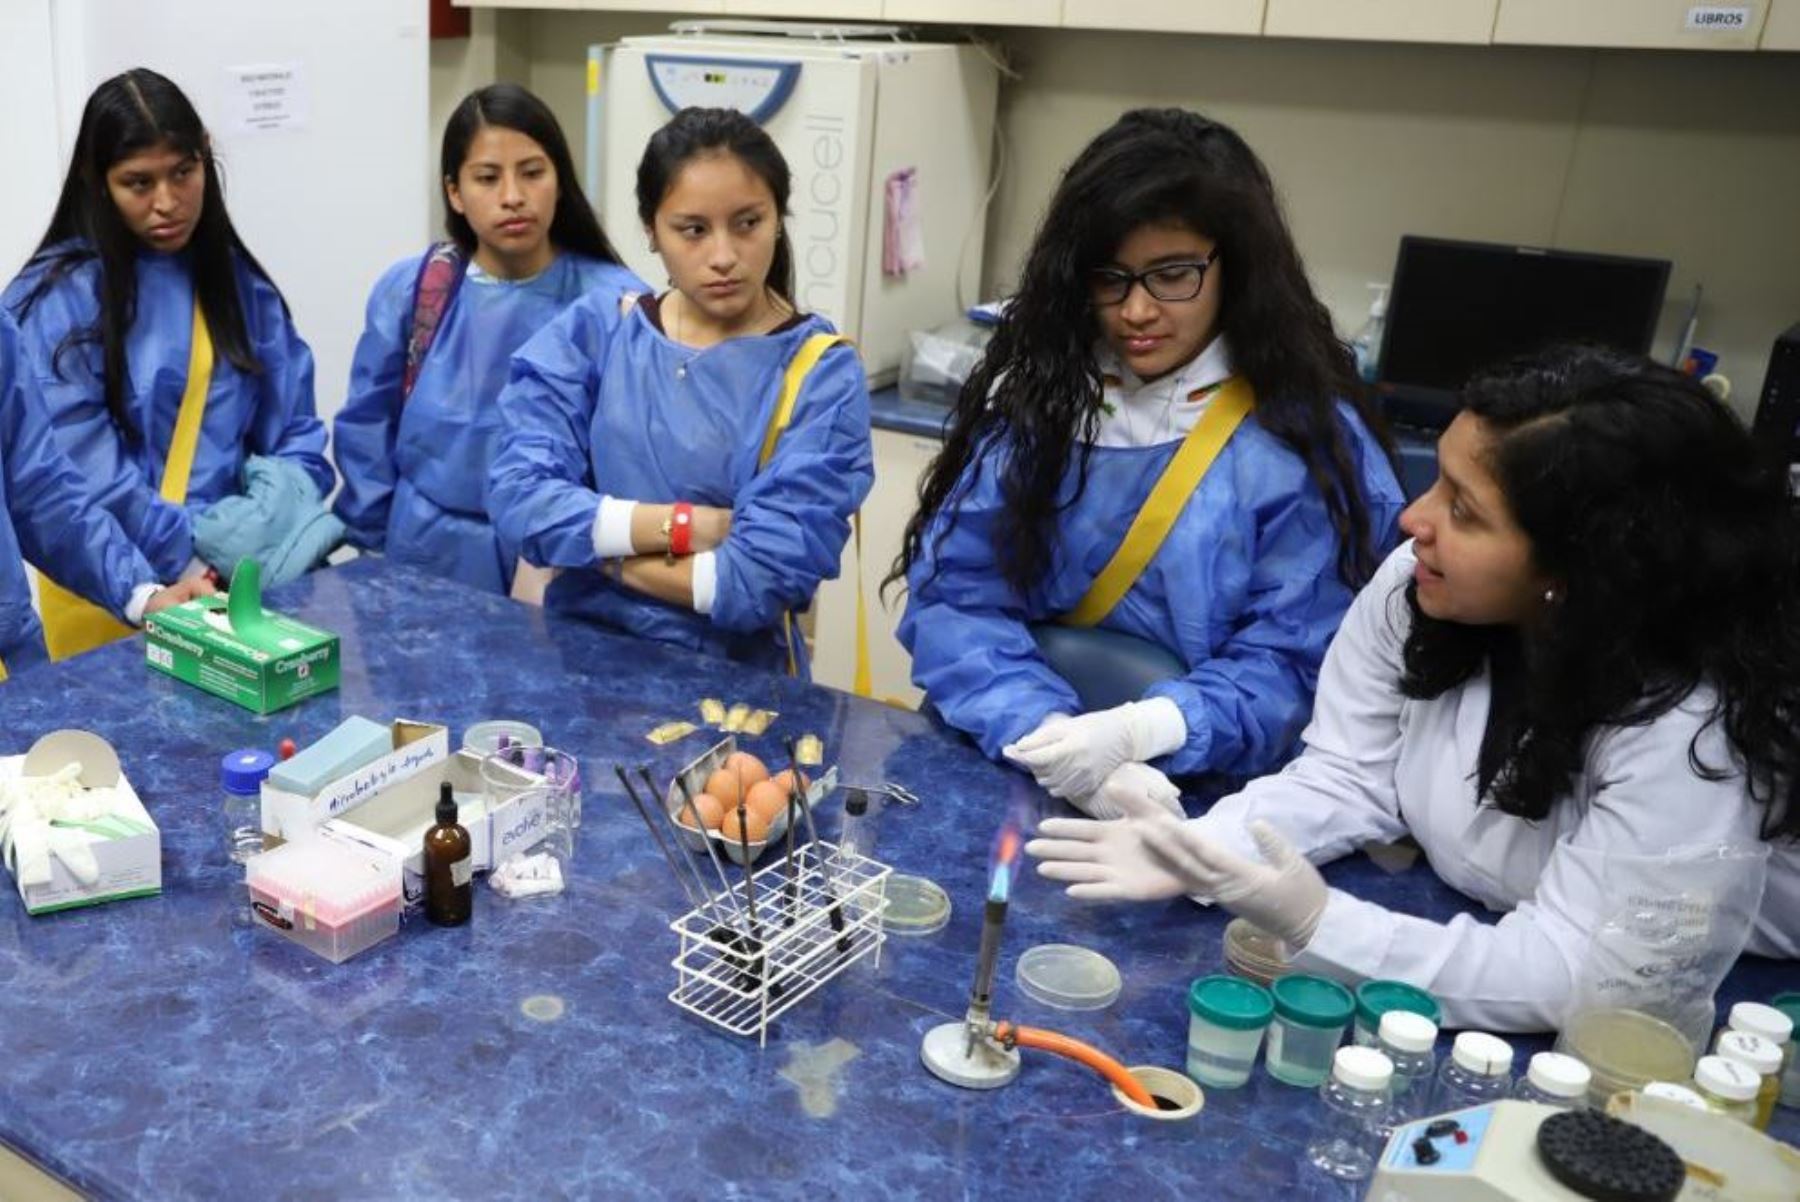 El curso tendrá una duración de dos semanas (del 28 de junio al 11 de julio) y está dirigido a docentes mujeres de las áreas curriculares de ciencia y tecnología o matemática dictando en las regiones de Ayacucho, Apurímac, Cusco, Huánuco, Huancavelica y Junín.